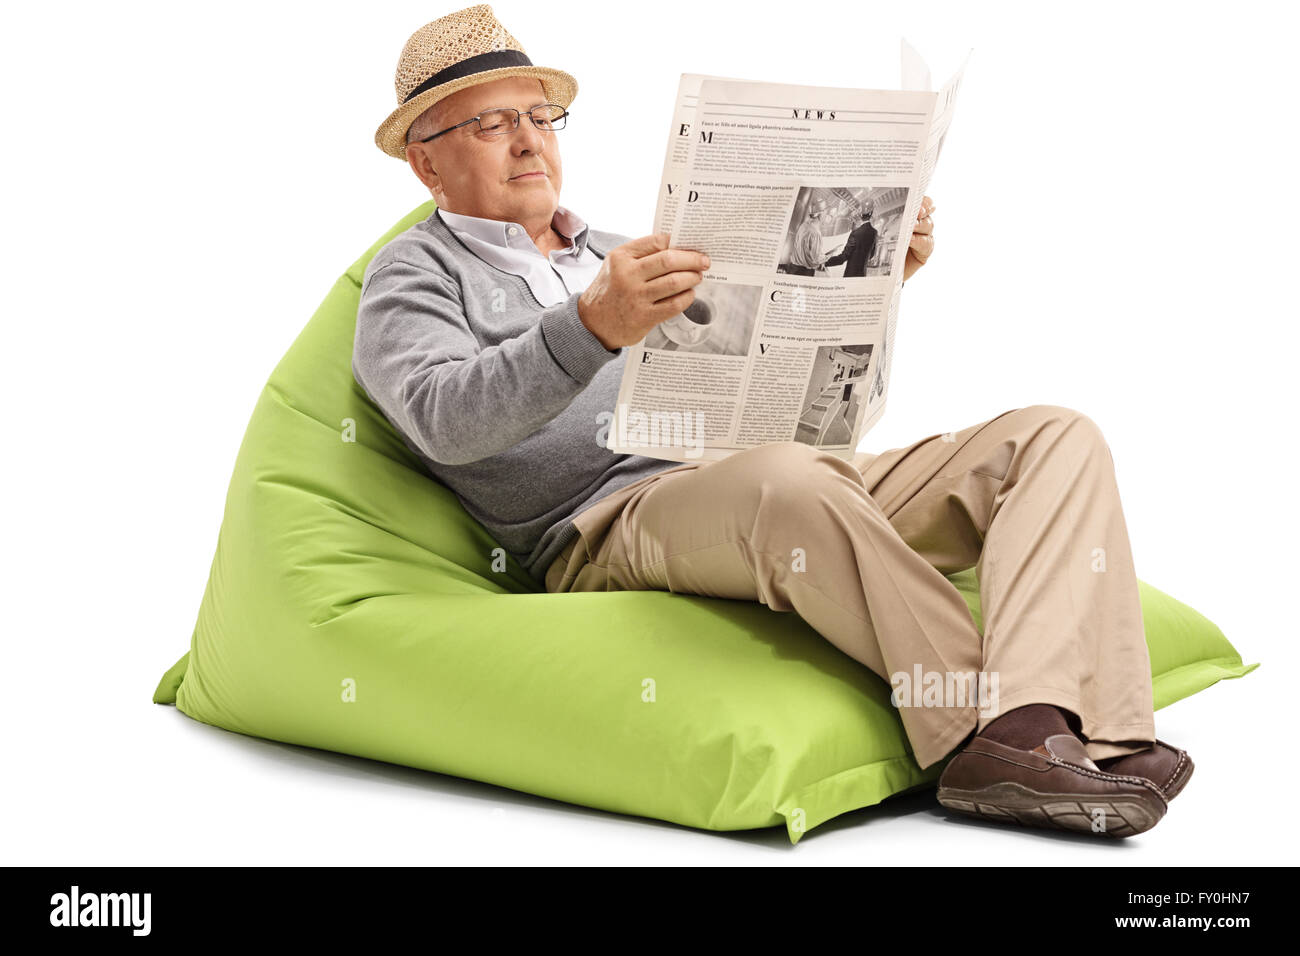 Relaxed mature man lire un journal assis sur un pouf vert isolé sur fond blanc Banque D'Images